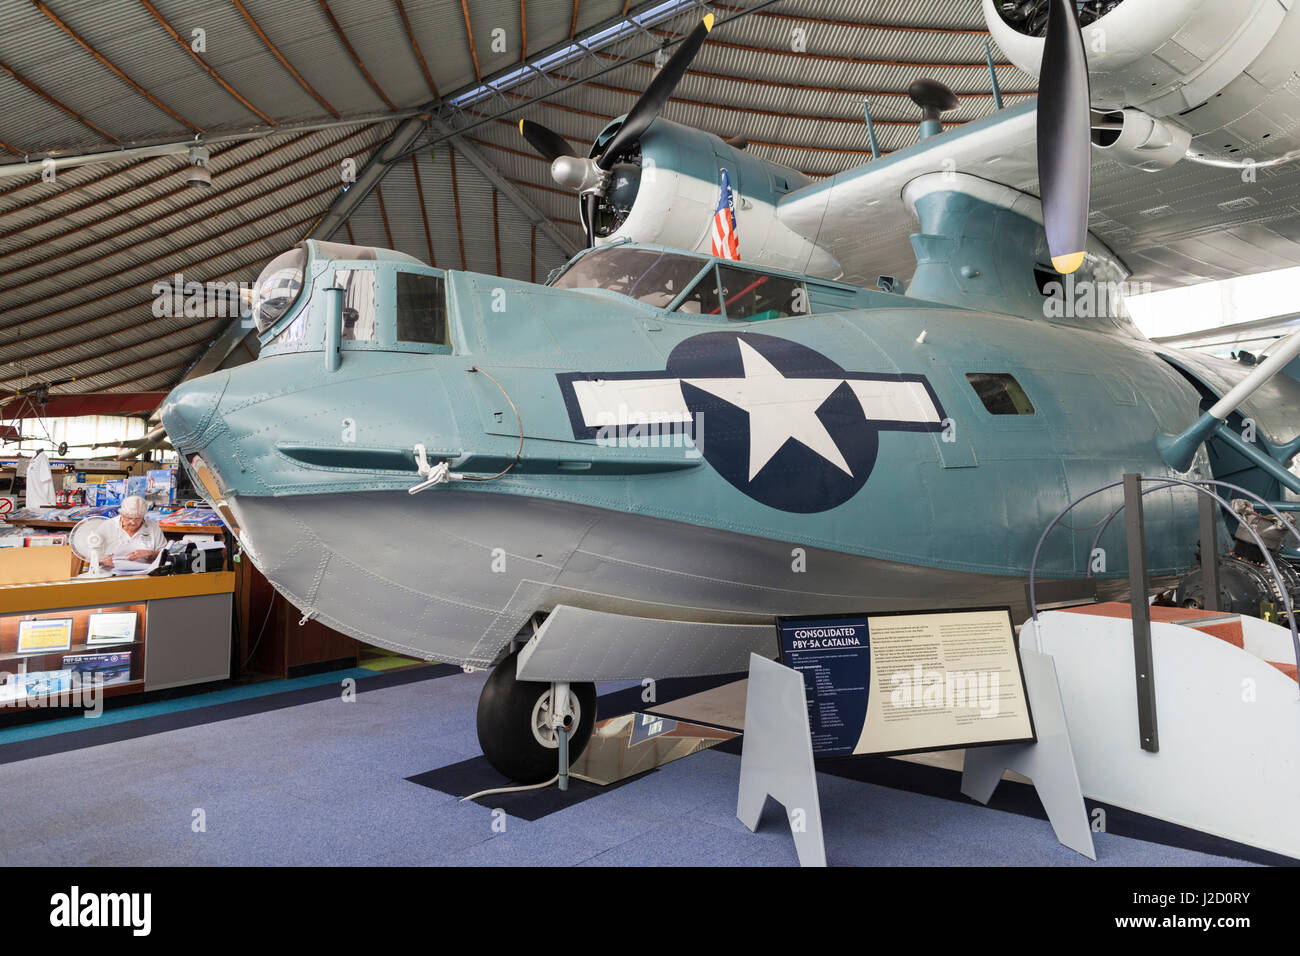 Australia Bull Creek Raaf Aviation Heritage Museum Ww2